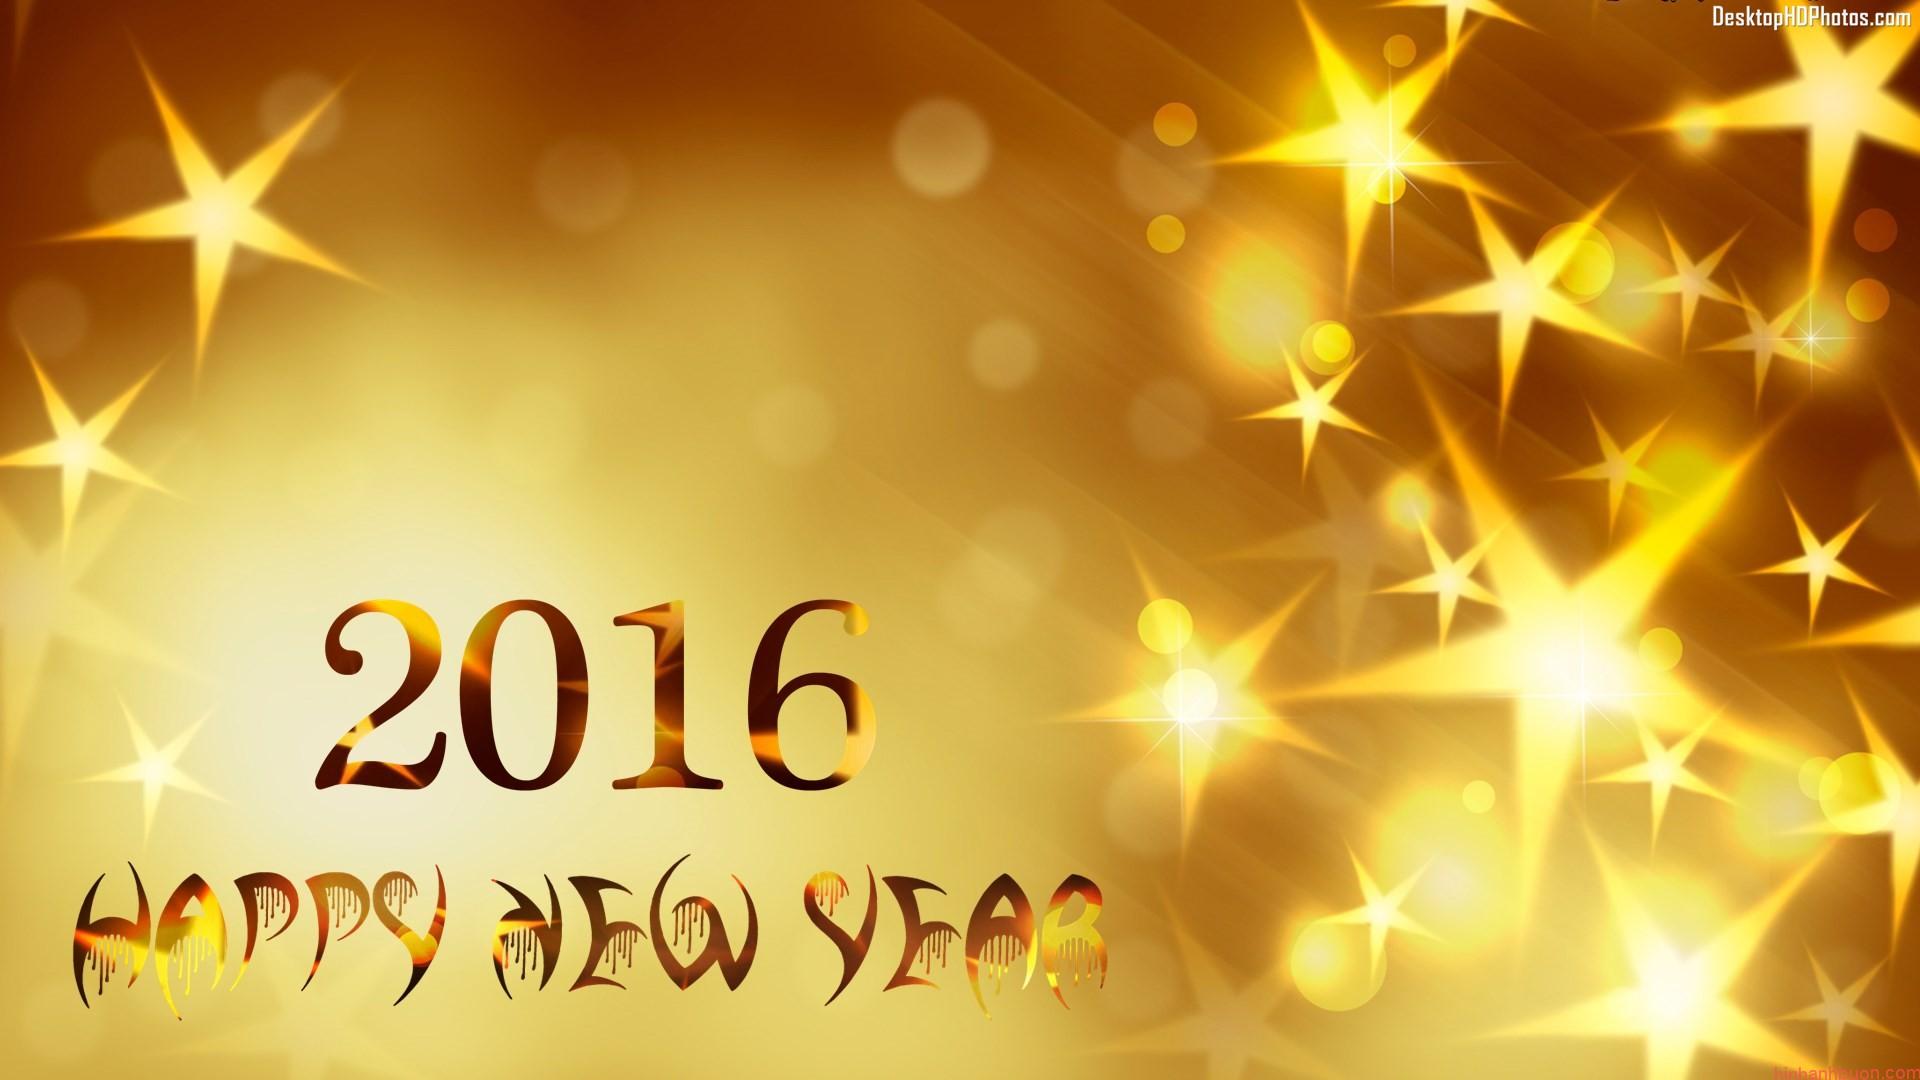 Tổng hợp những hình ảnh đẹp và lung linh nhất chúc mừng năm mới 2016 -13